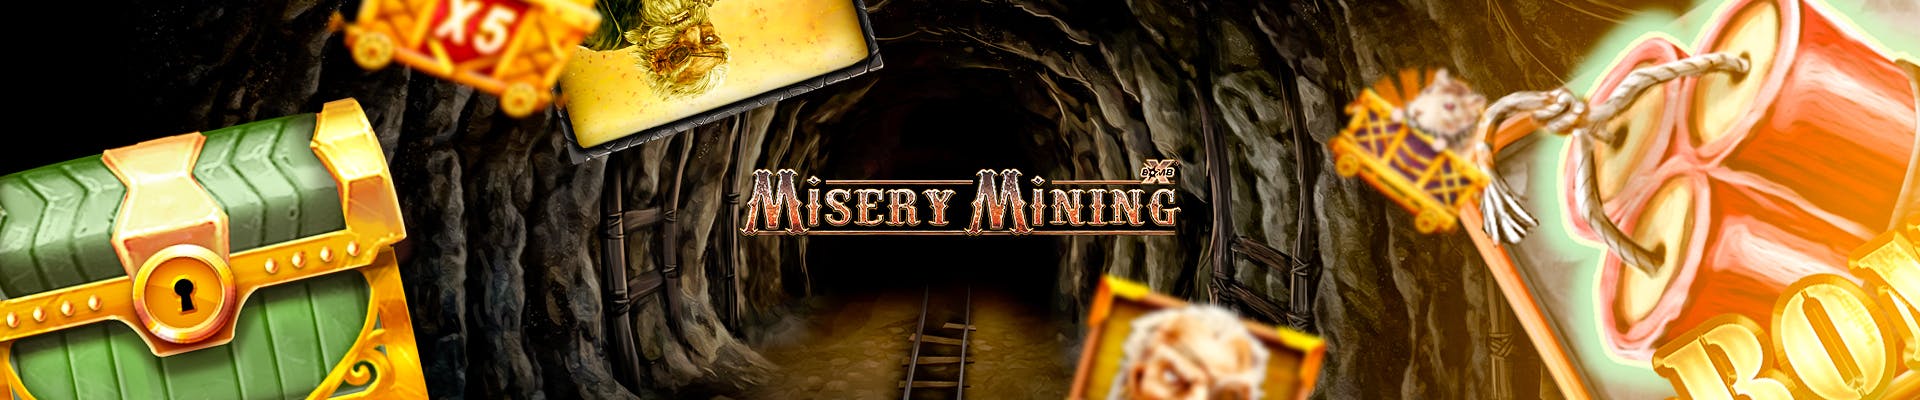 header misery mining